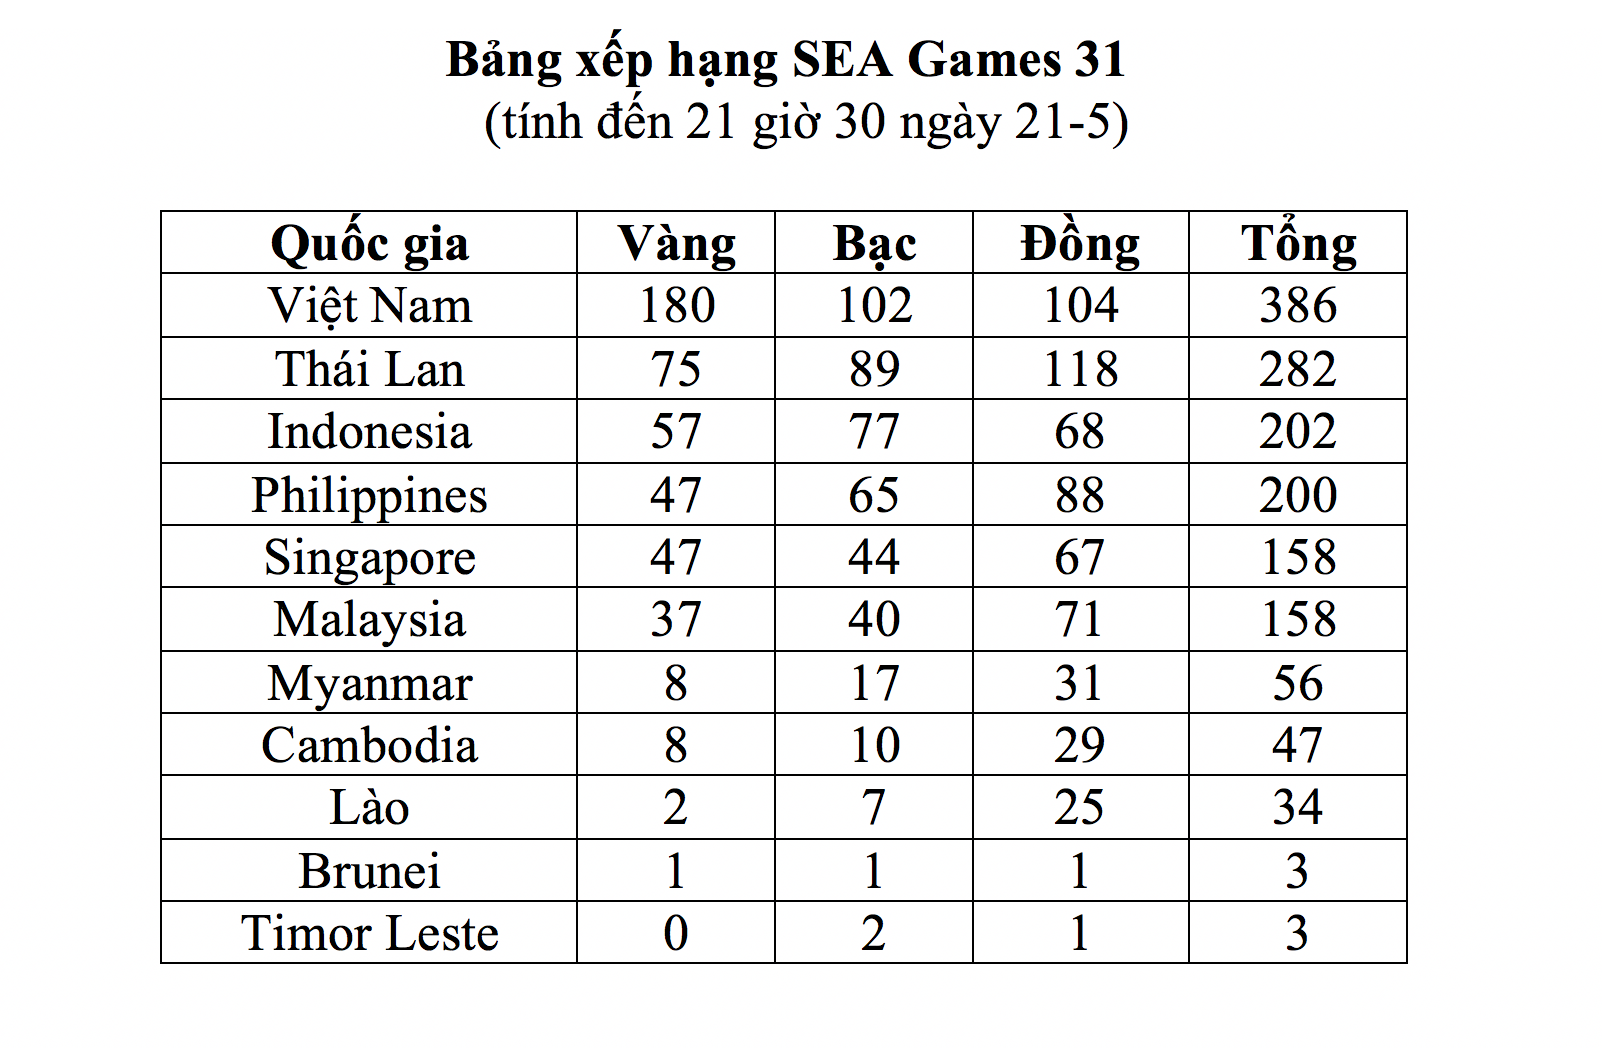 Nhật ký SEA Games 31 ngày 21-5: Bóng đá nữ lên ngôi, TTVN vượt xa chỉ tiêu HCV - Ảnh 1.